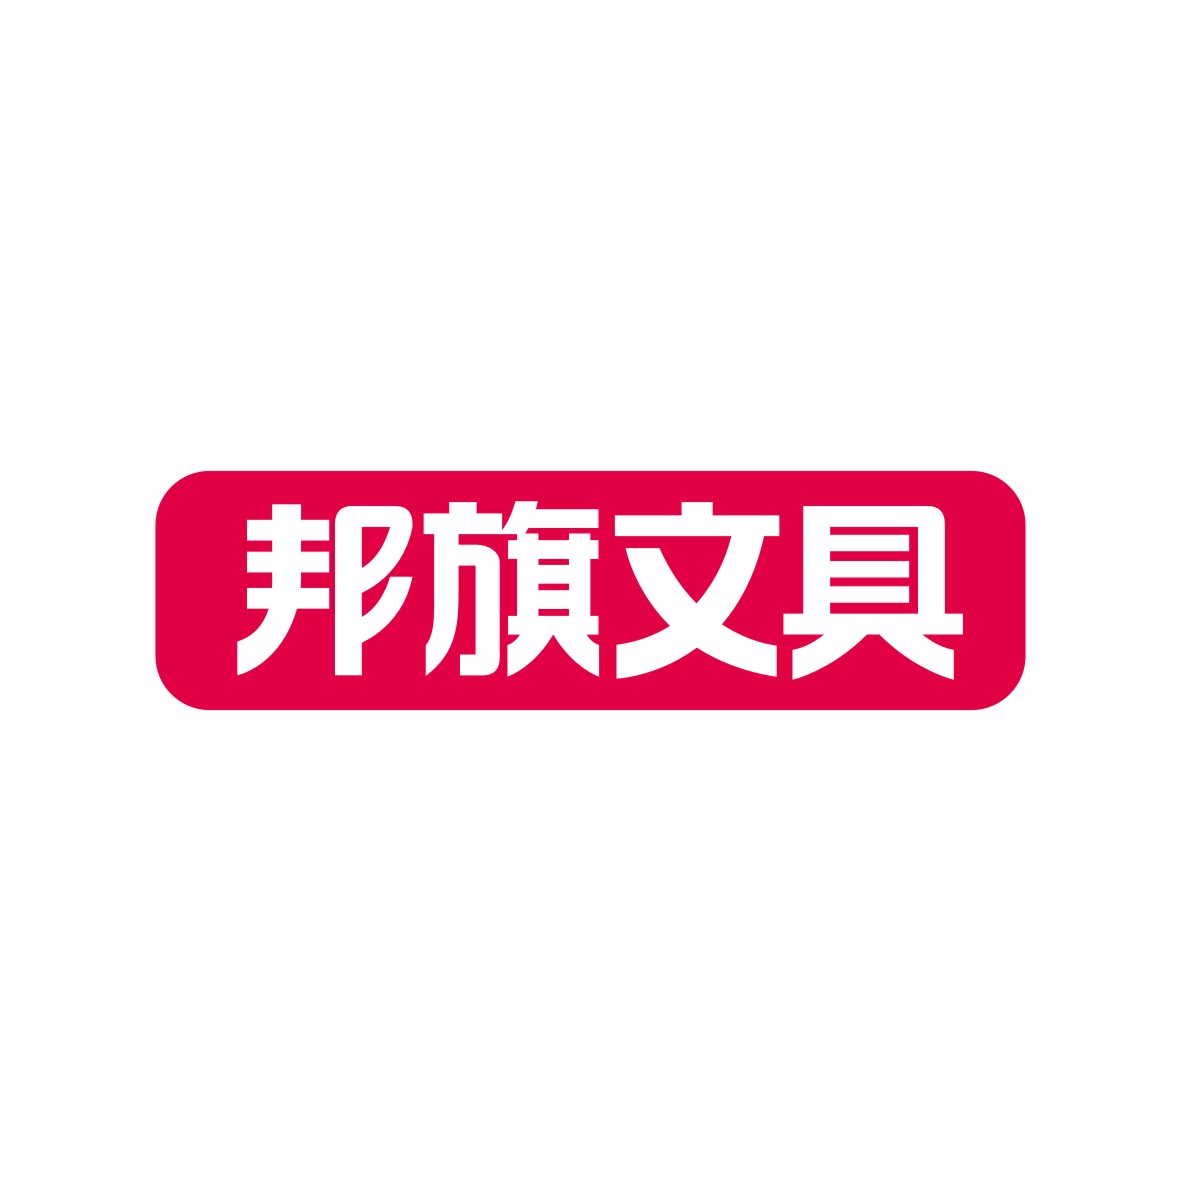 广州品辰文化传播有限公司商标邦旗文具（16类）商标转让多少钱？